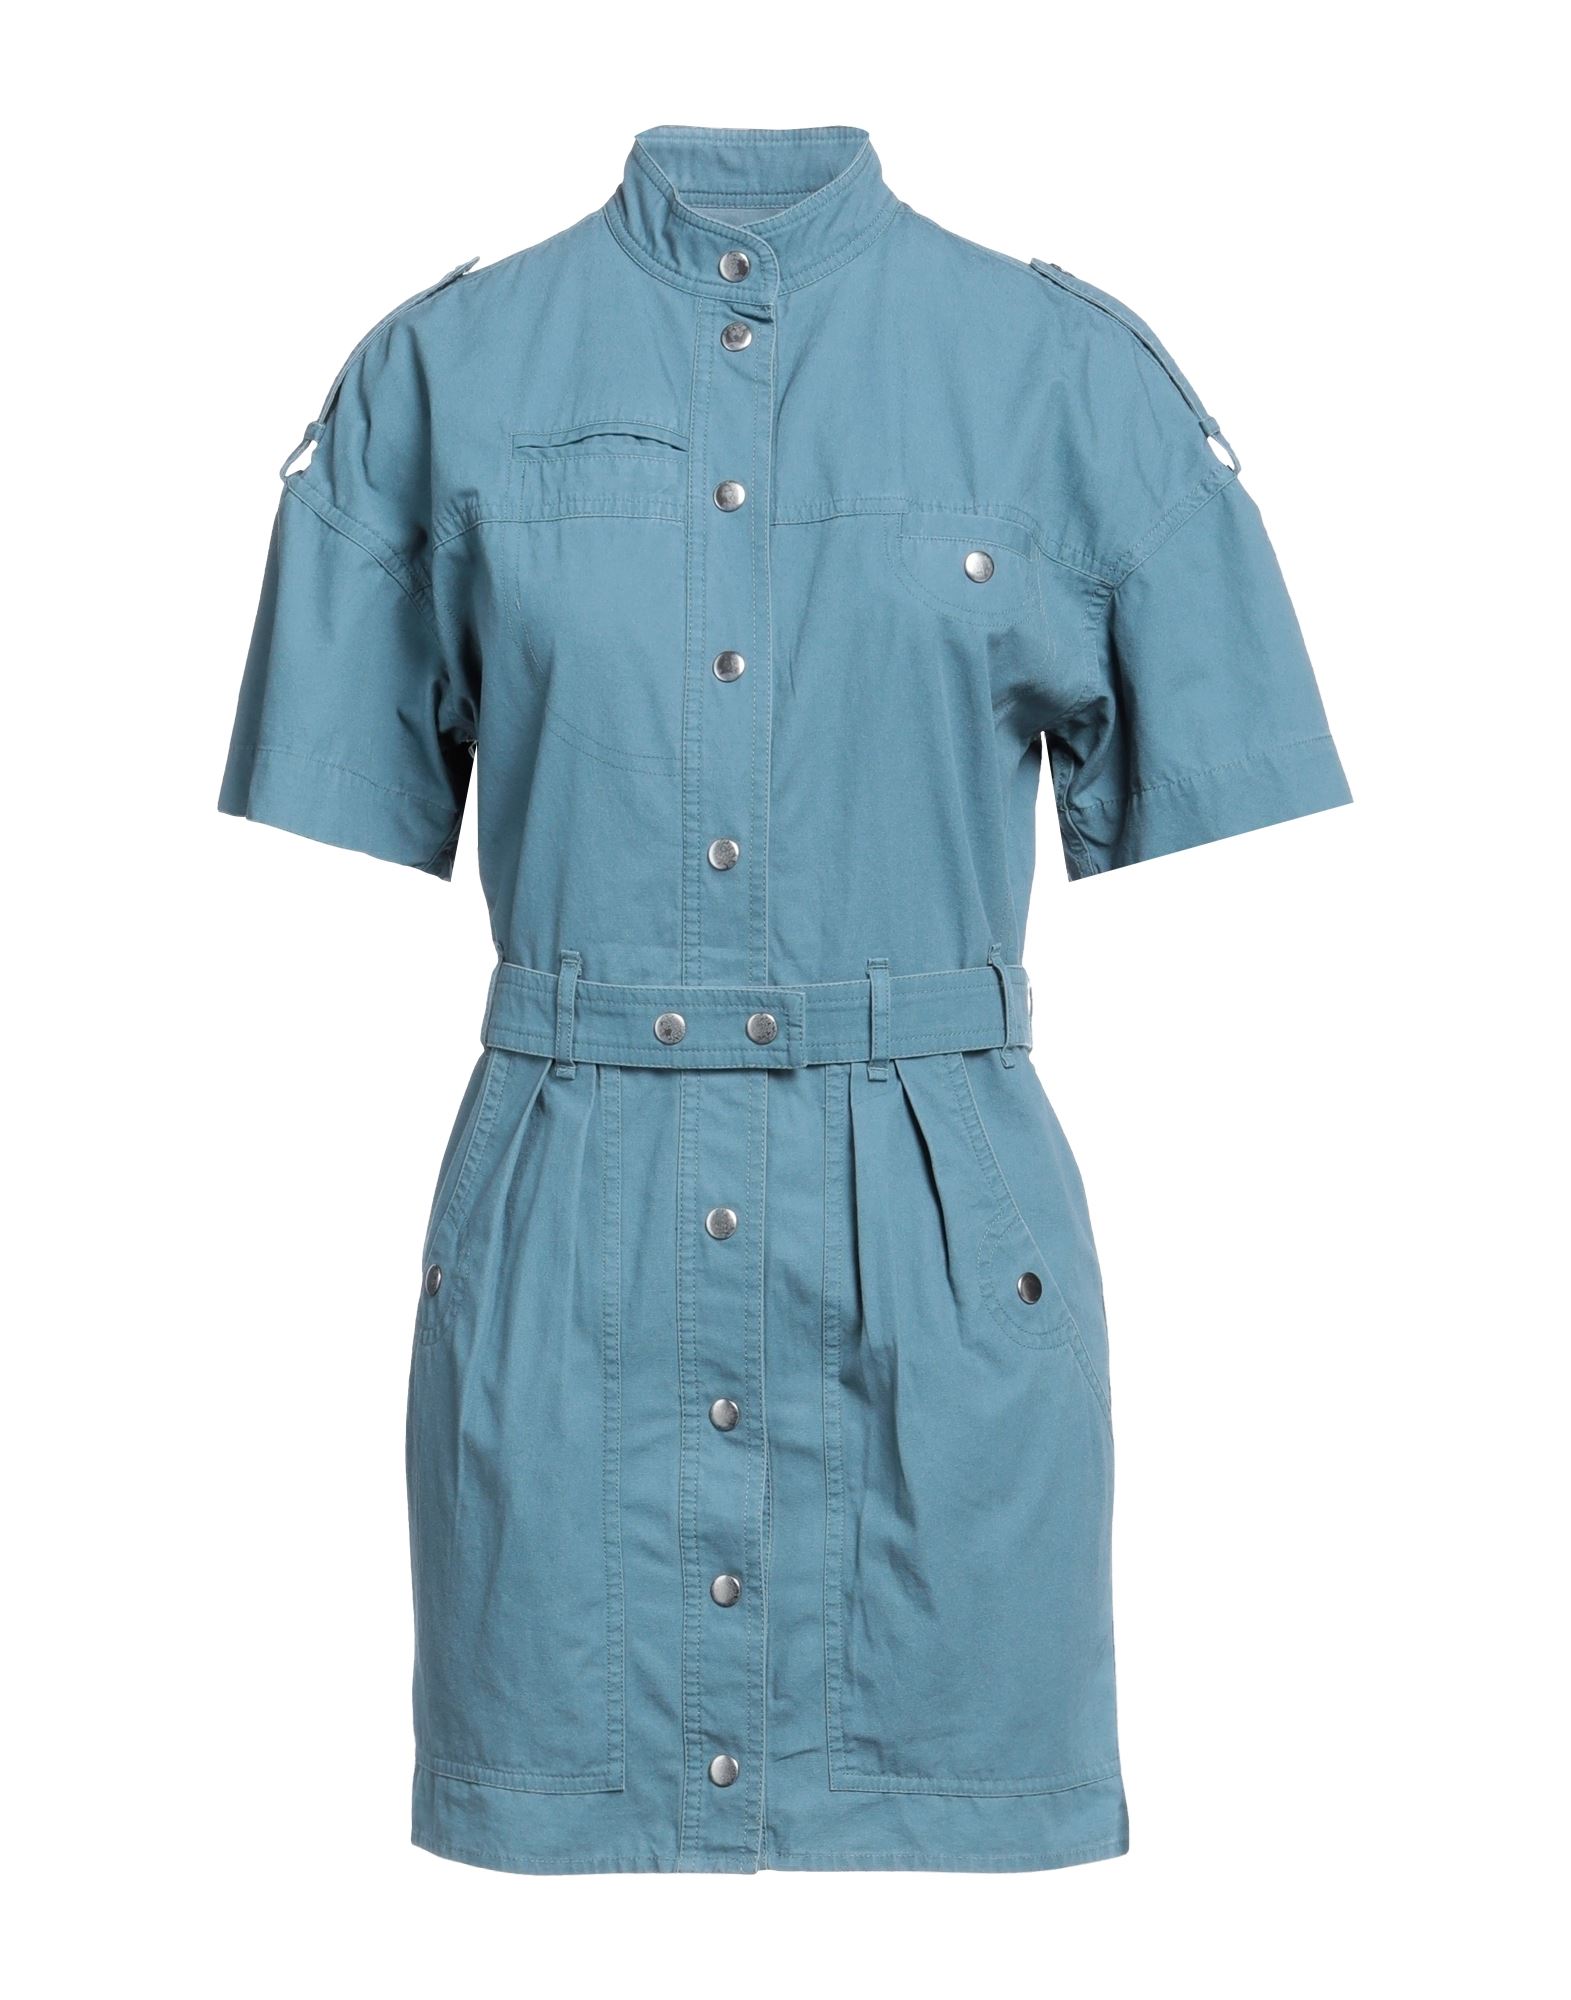 Isabel Marant Étoile Woman Short Dress Pastel Blue Size 2 Cotton